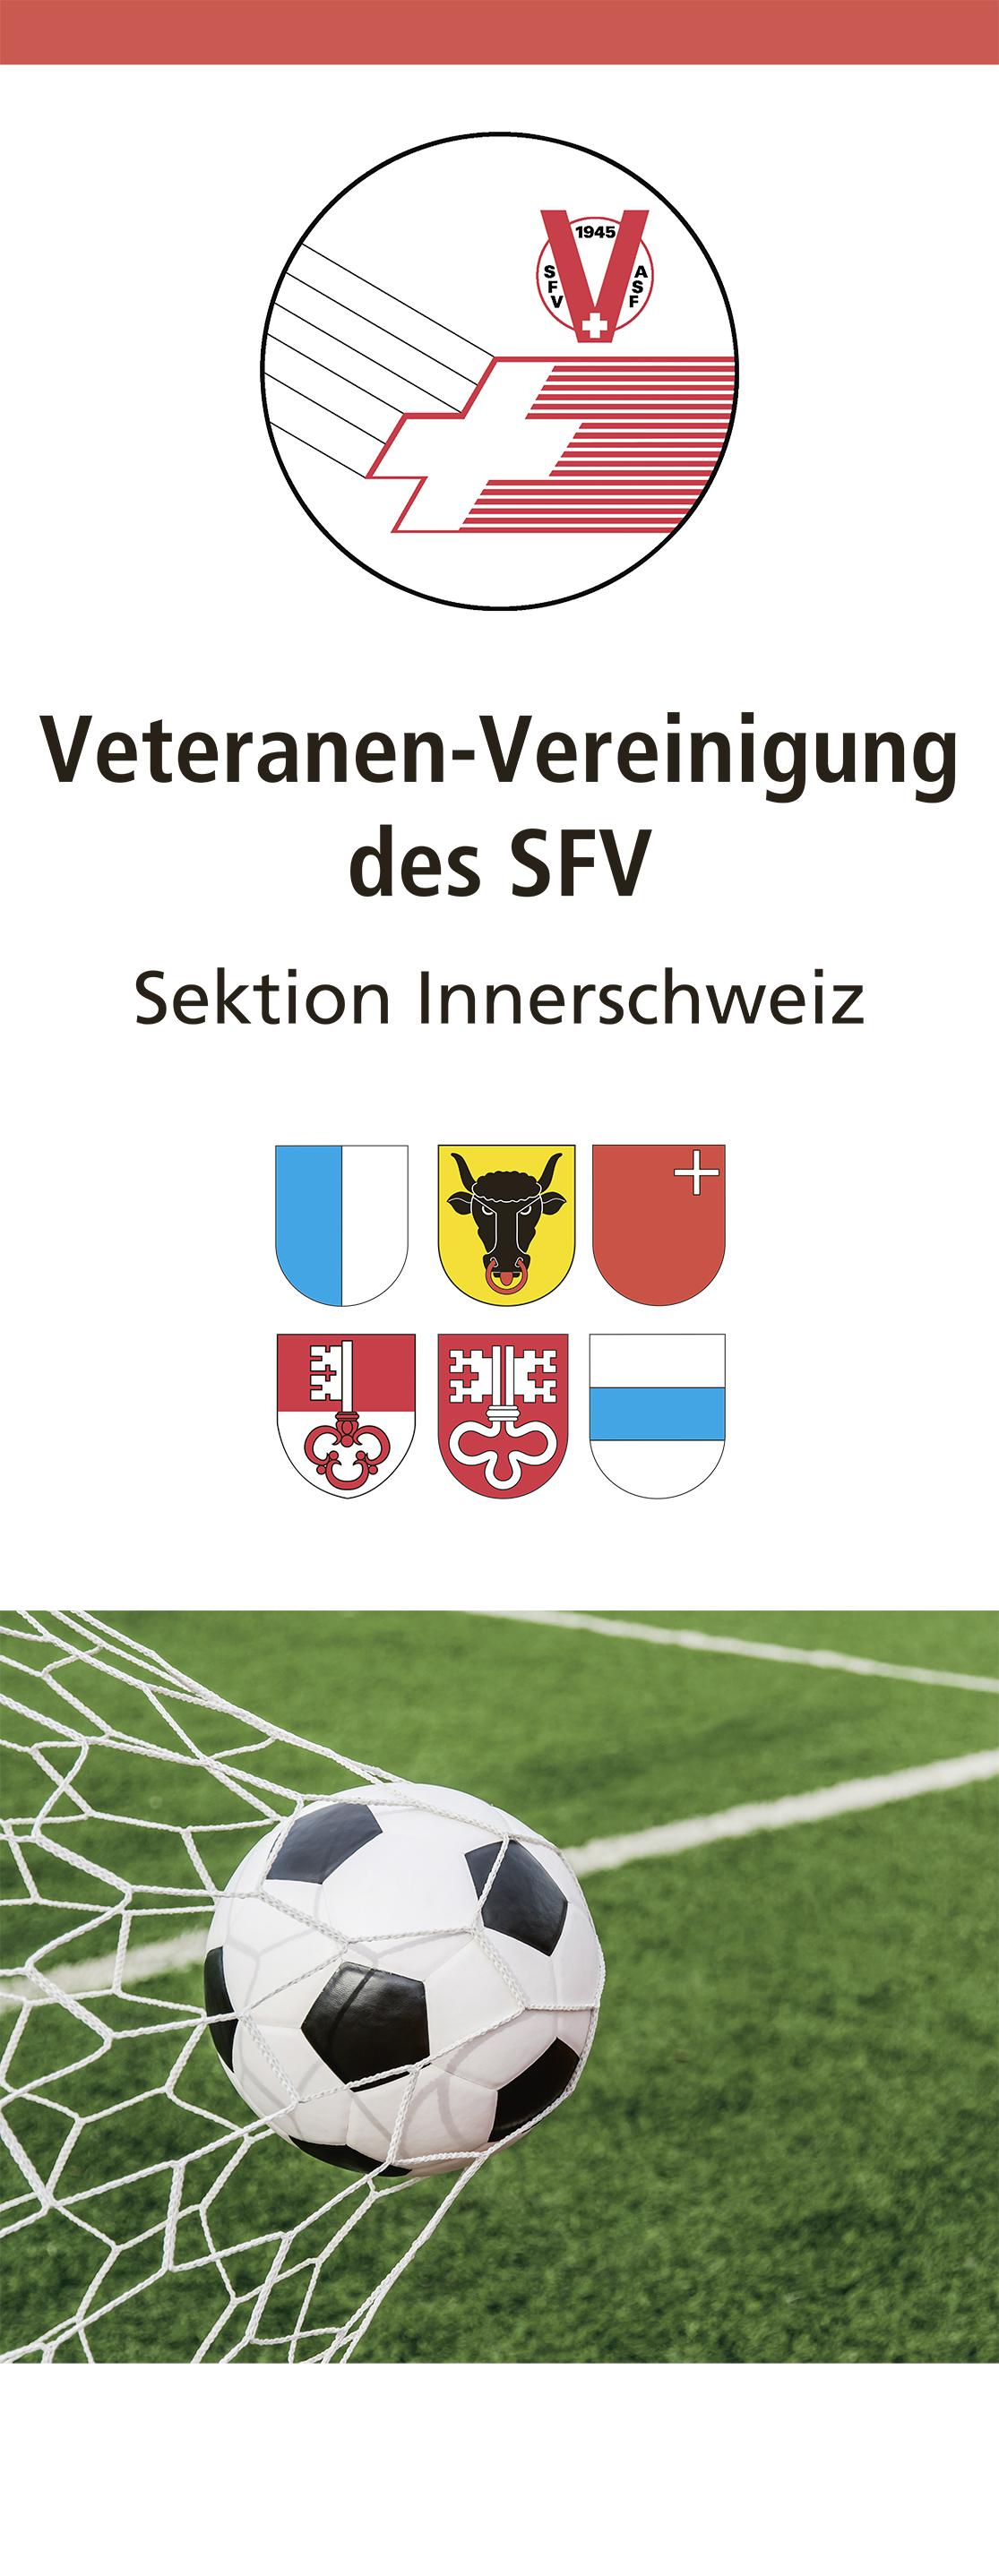 (c) Fussballveteranen-innerschweiz.ch